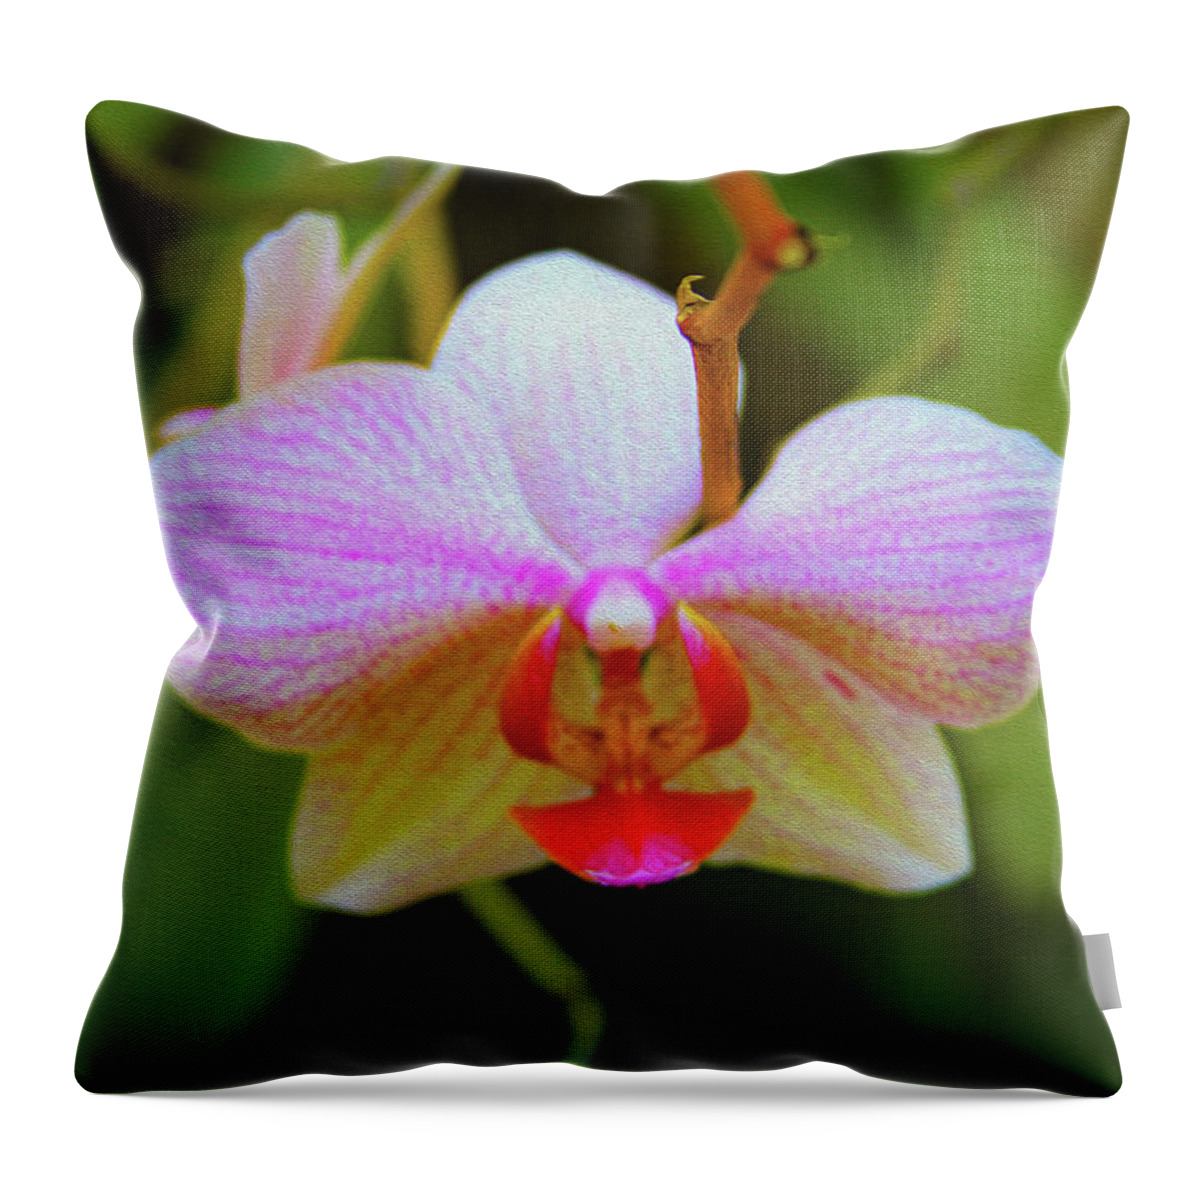 Bonnie Follett Throw Pillow featuring the photograph Orchid Blush by Bonnie Follett